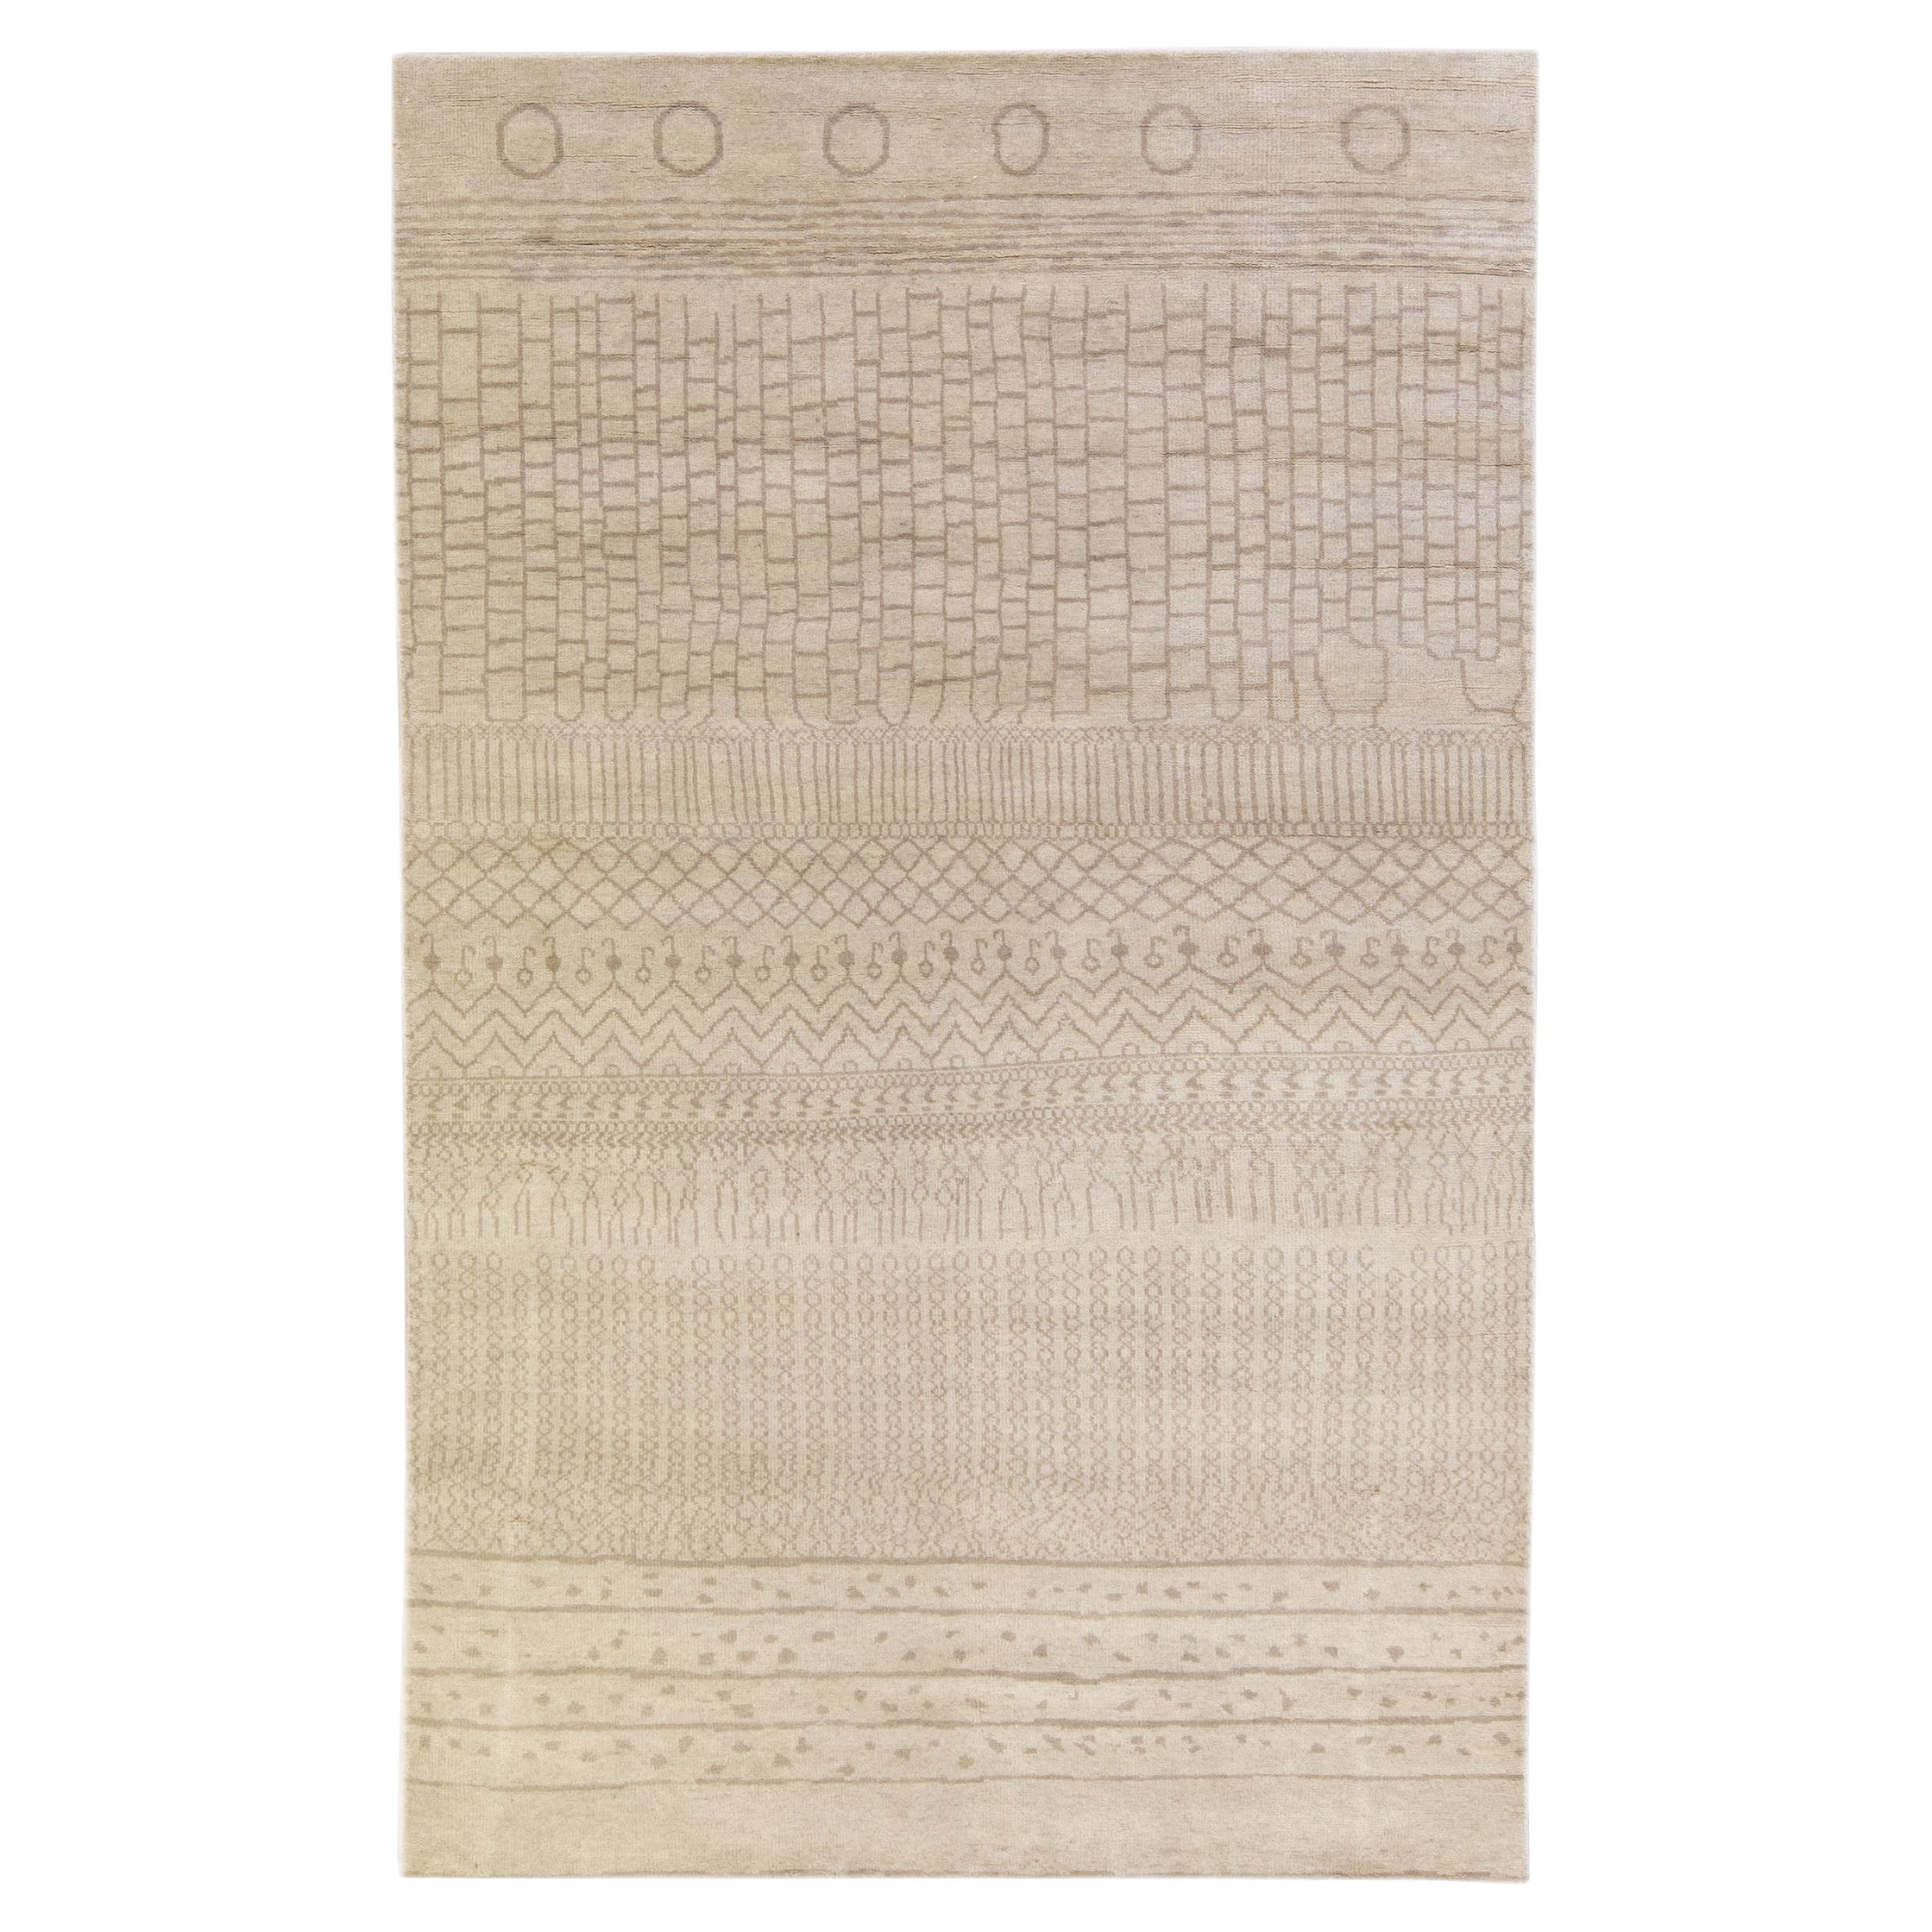 Tapis en laine beige de style marocain moderne et conçu à la main